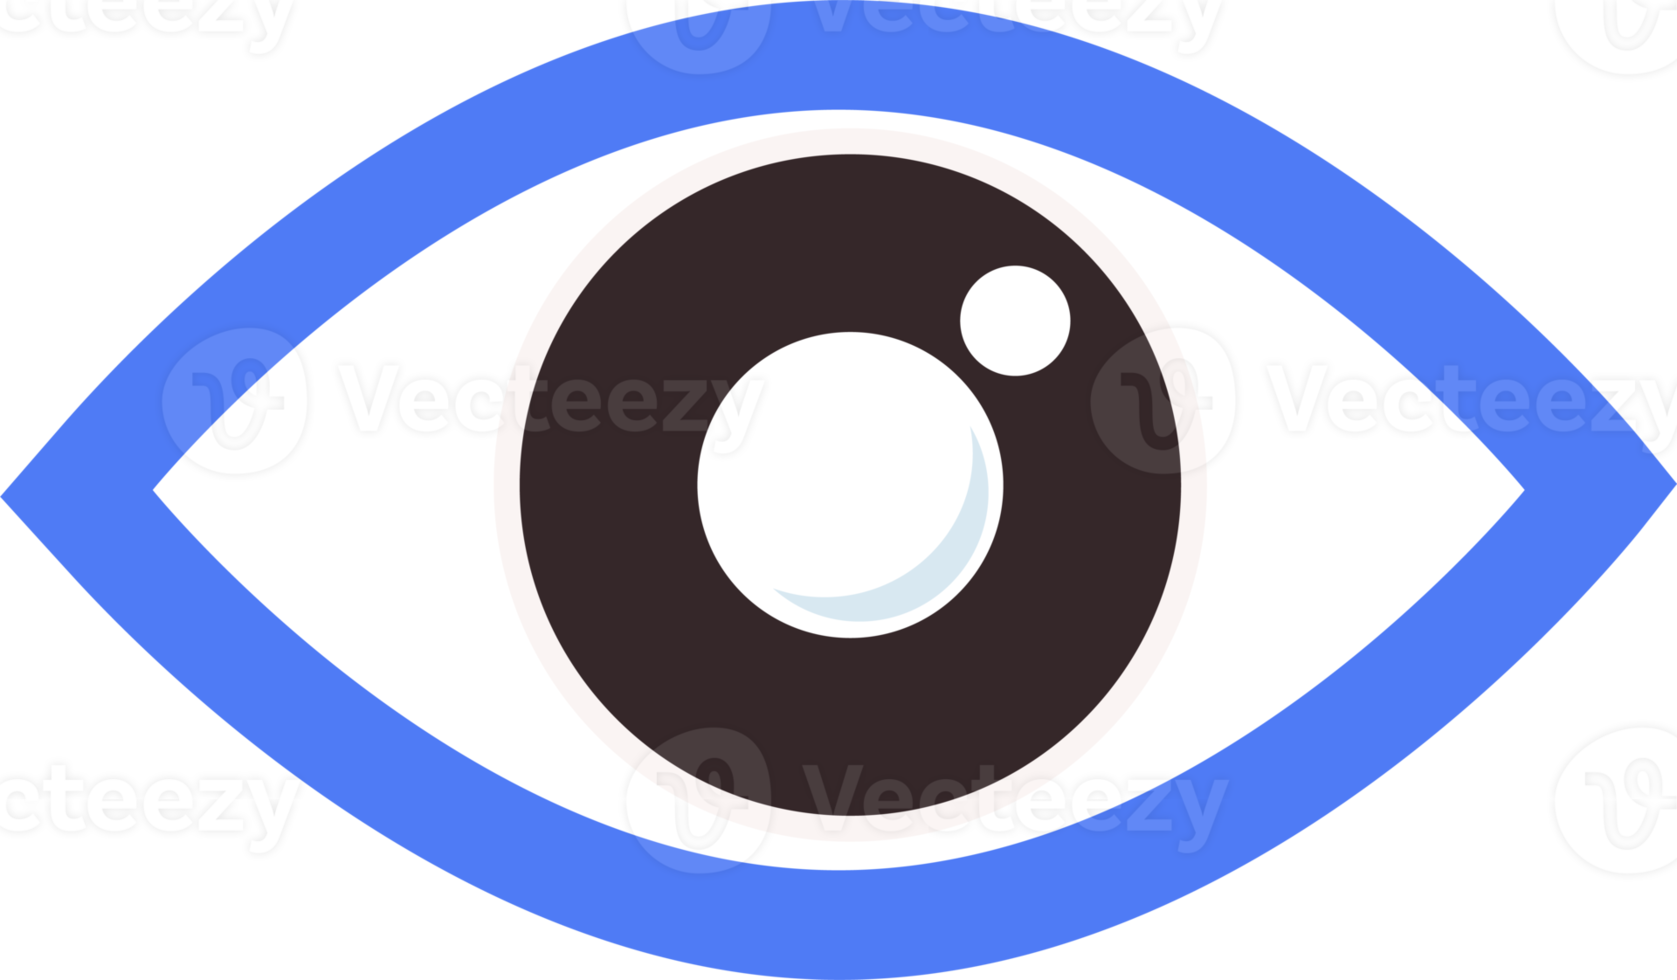 eye flat icon png